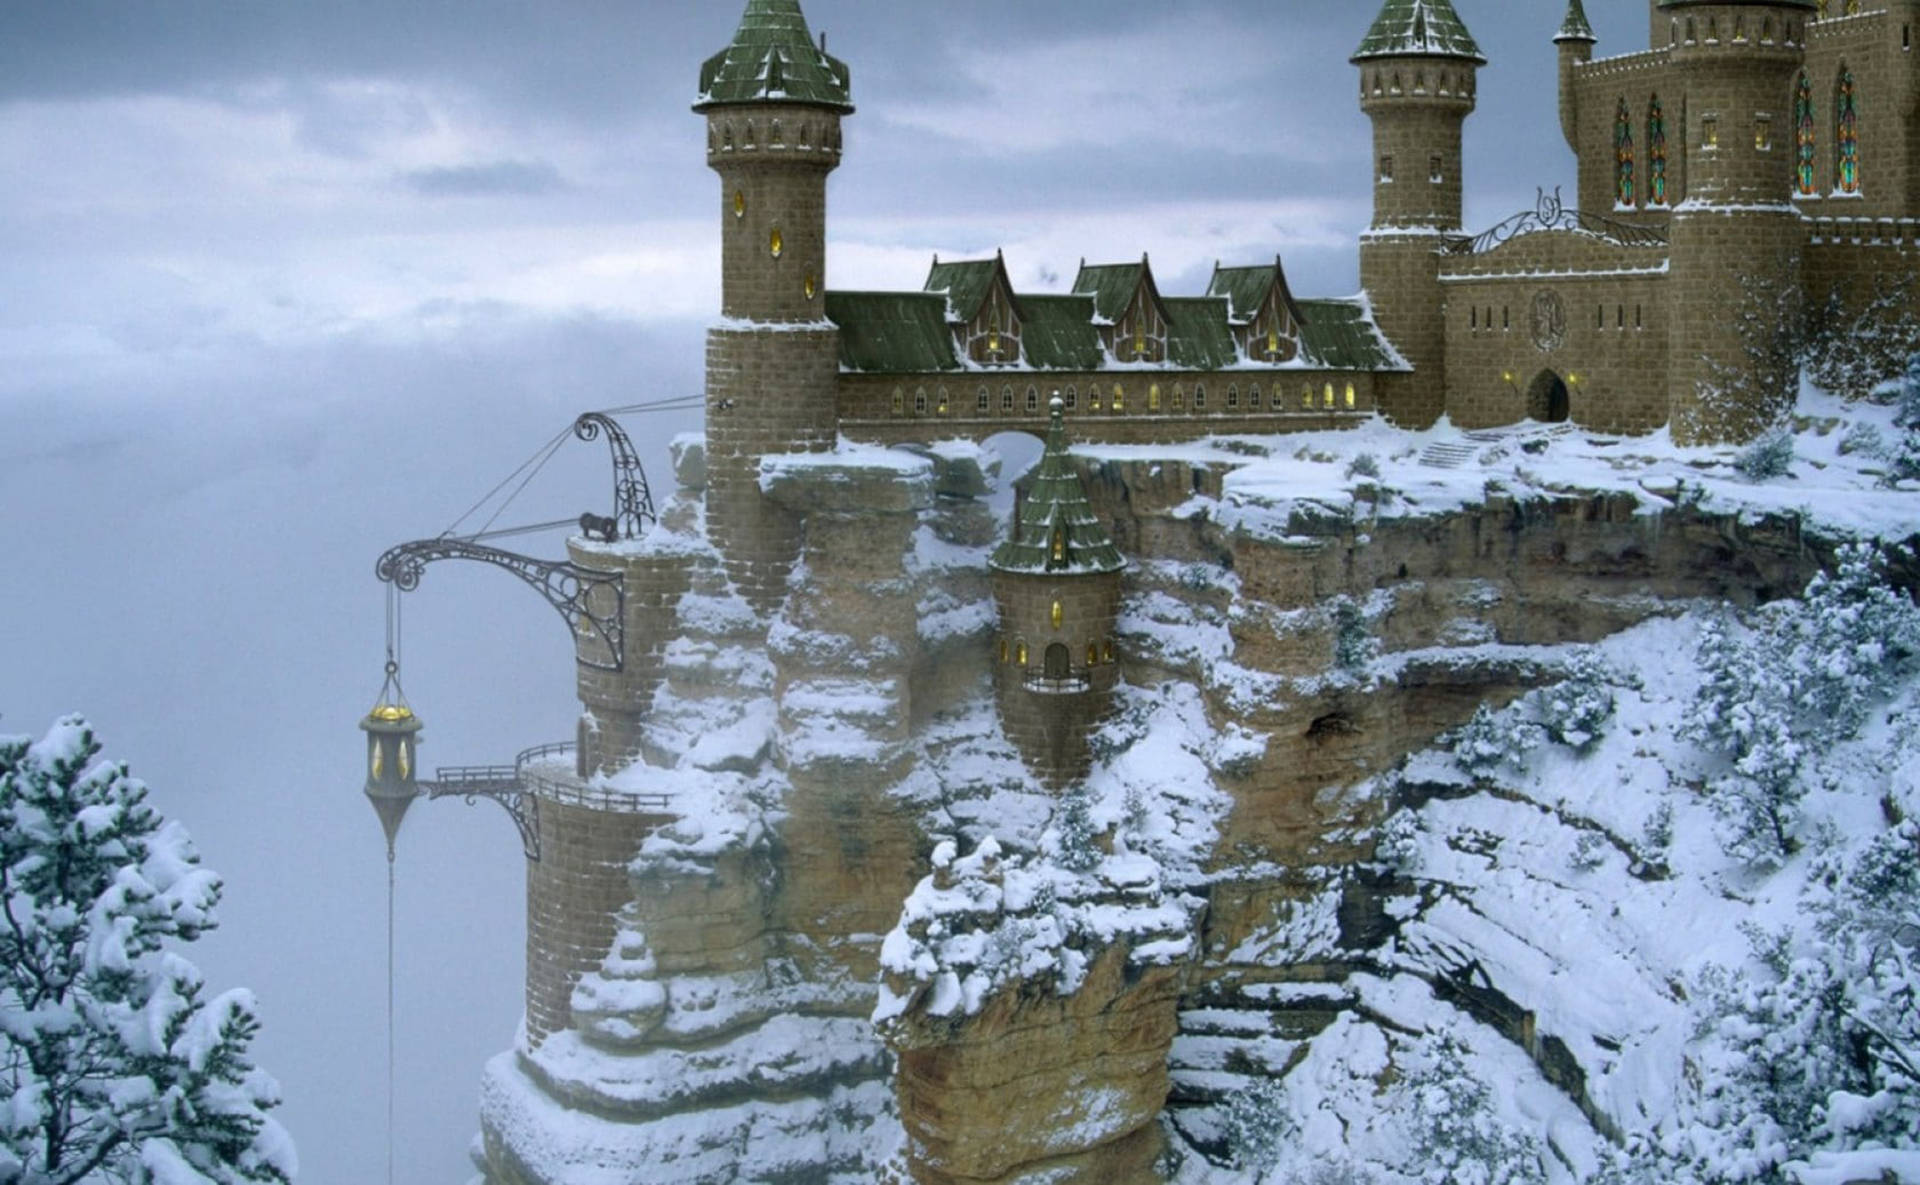 St. Michael's Mount Frozen Castle